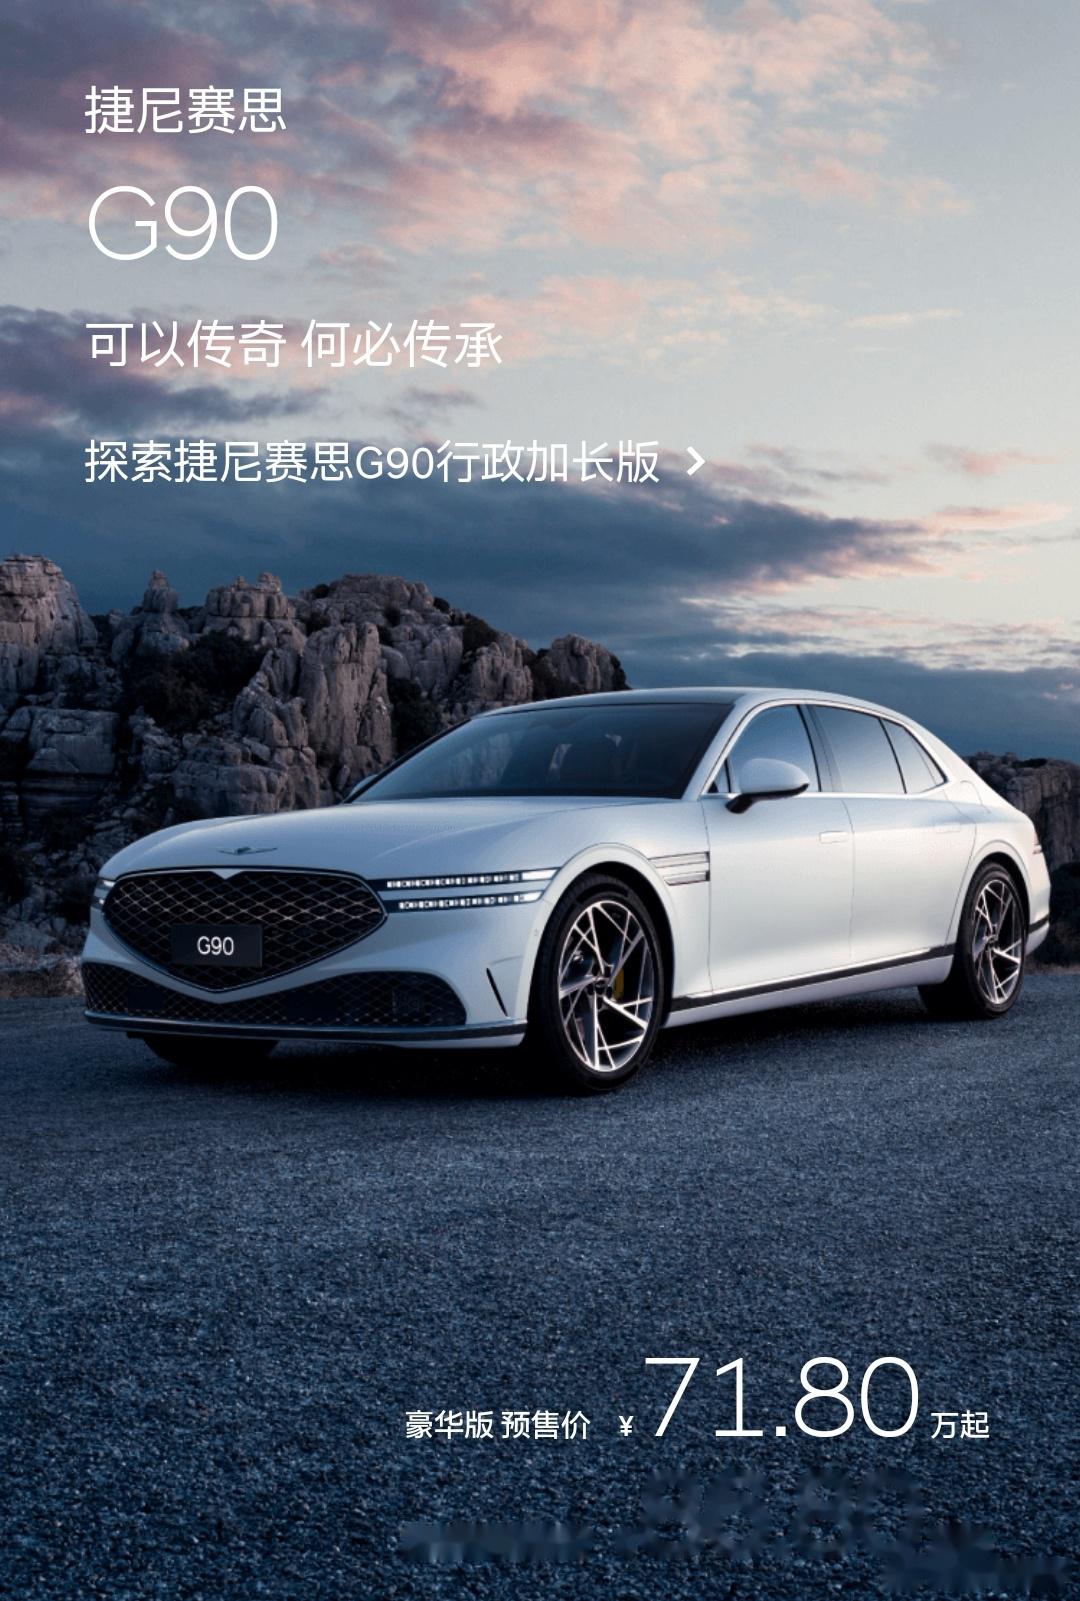 韩国豪华品牌捷尼赛思在带来三款新车首秀,旗舰轿车g90正式引进国内